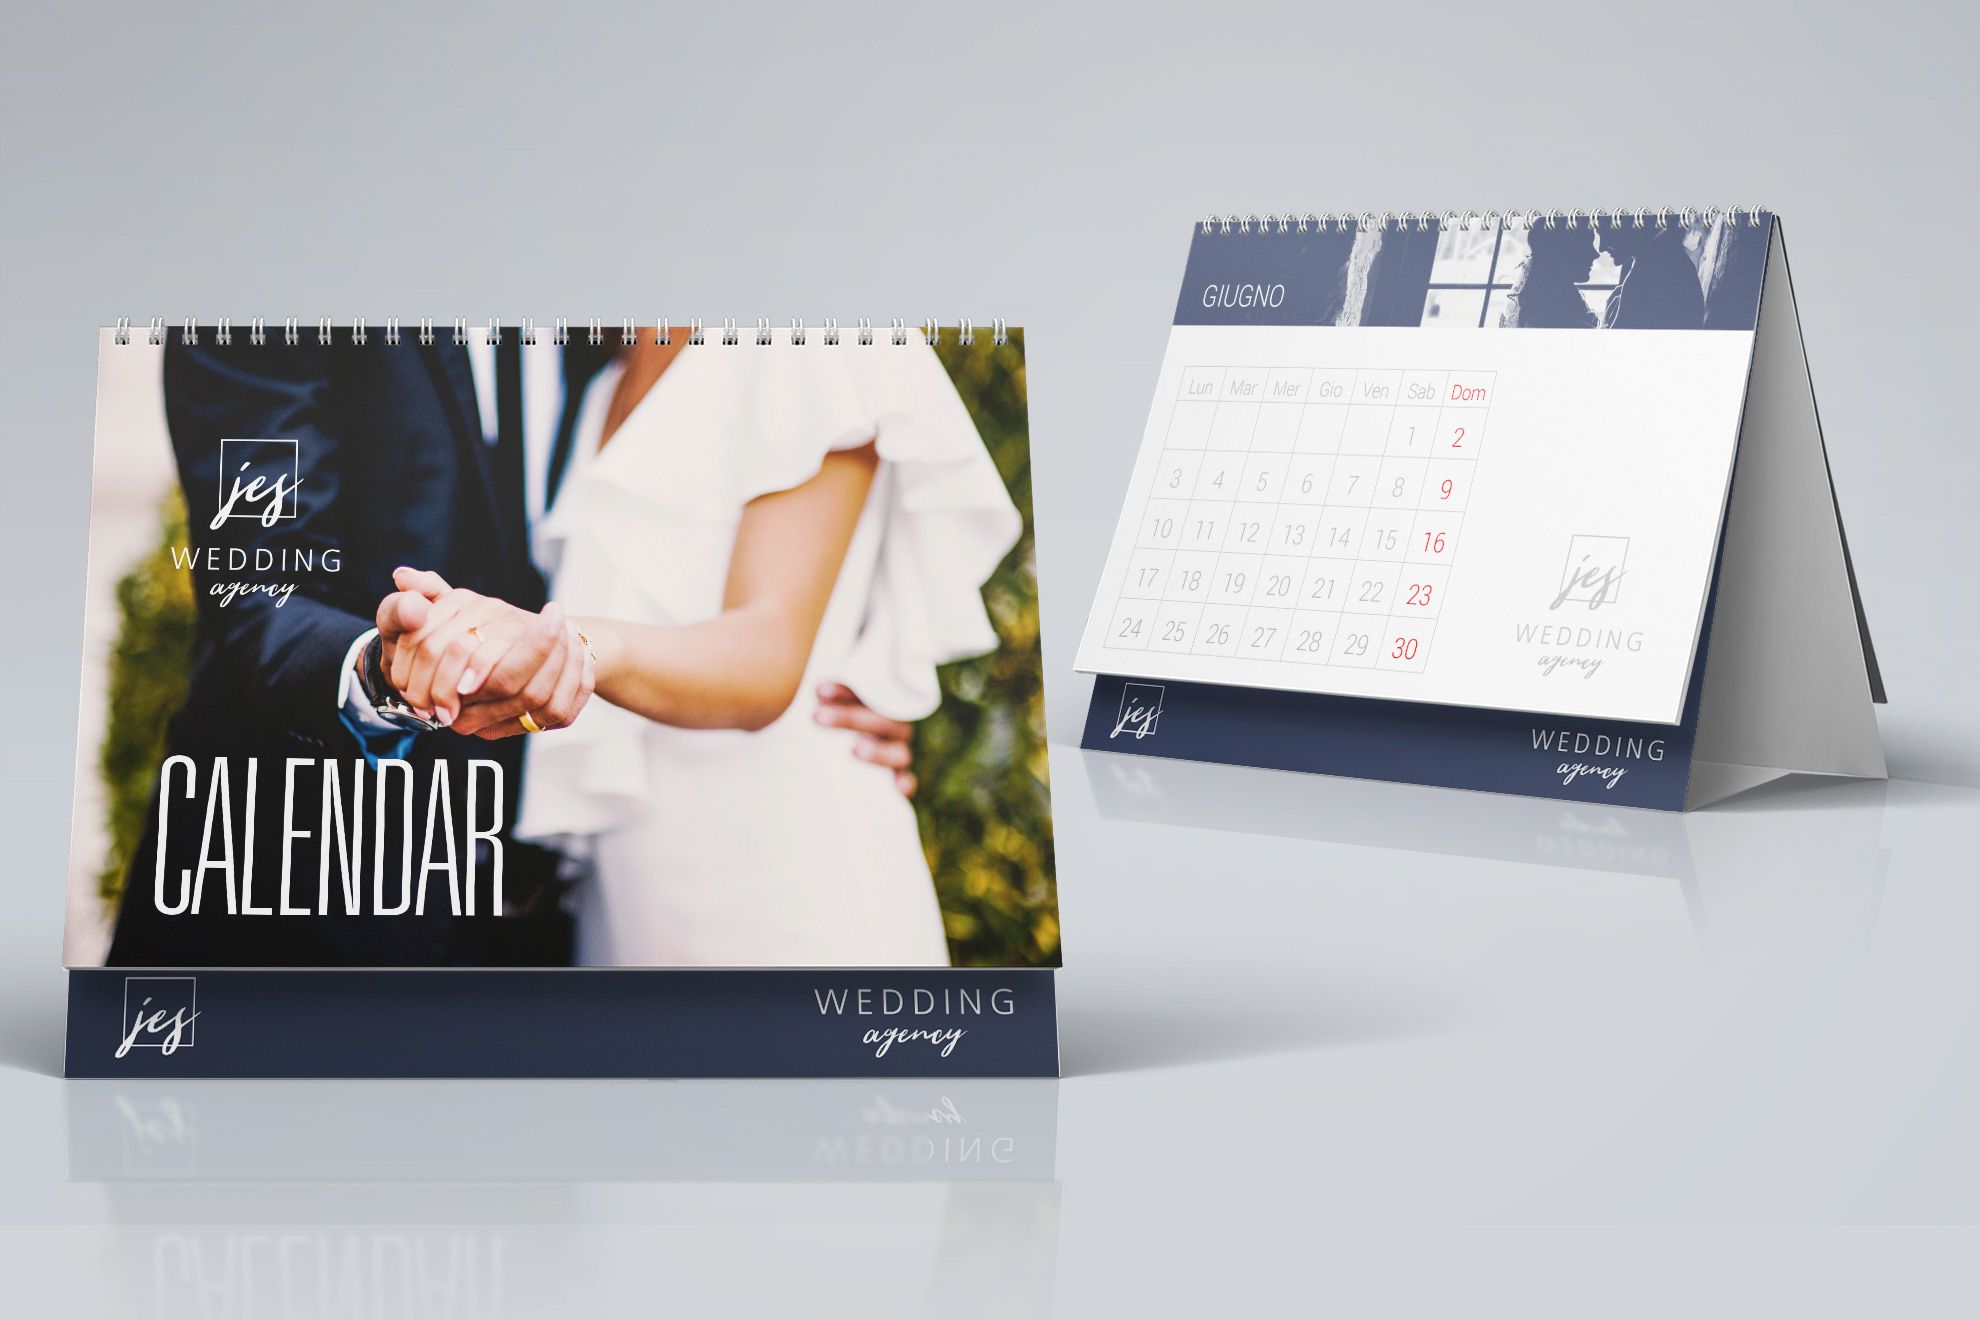 Creare Calendari da Tavolo Personalizzati: Creare dei calendari da tavolo personalizzati è una buona idea per fare un regalo a clienti e dipendenti e anche per promuovere l’immagine della tua azienda.